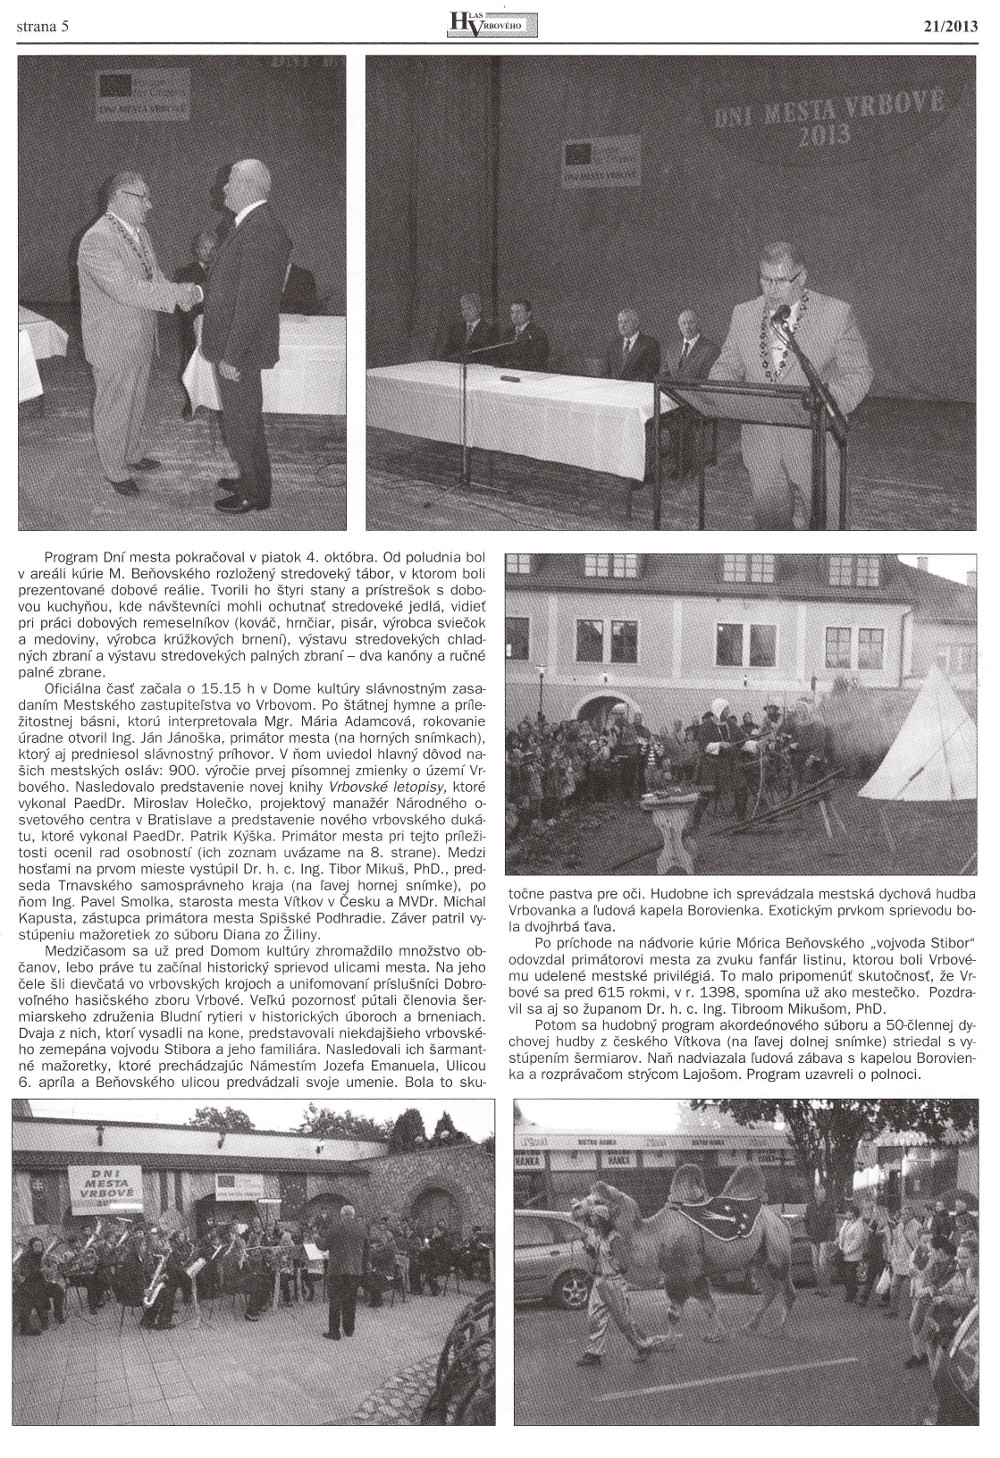 Hlas Vrbového 21/2013, strana 5